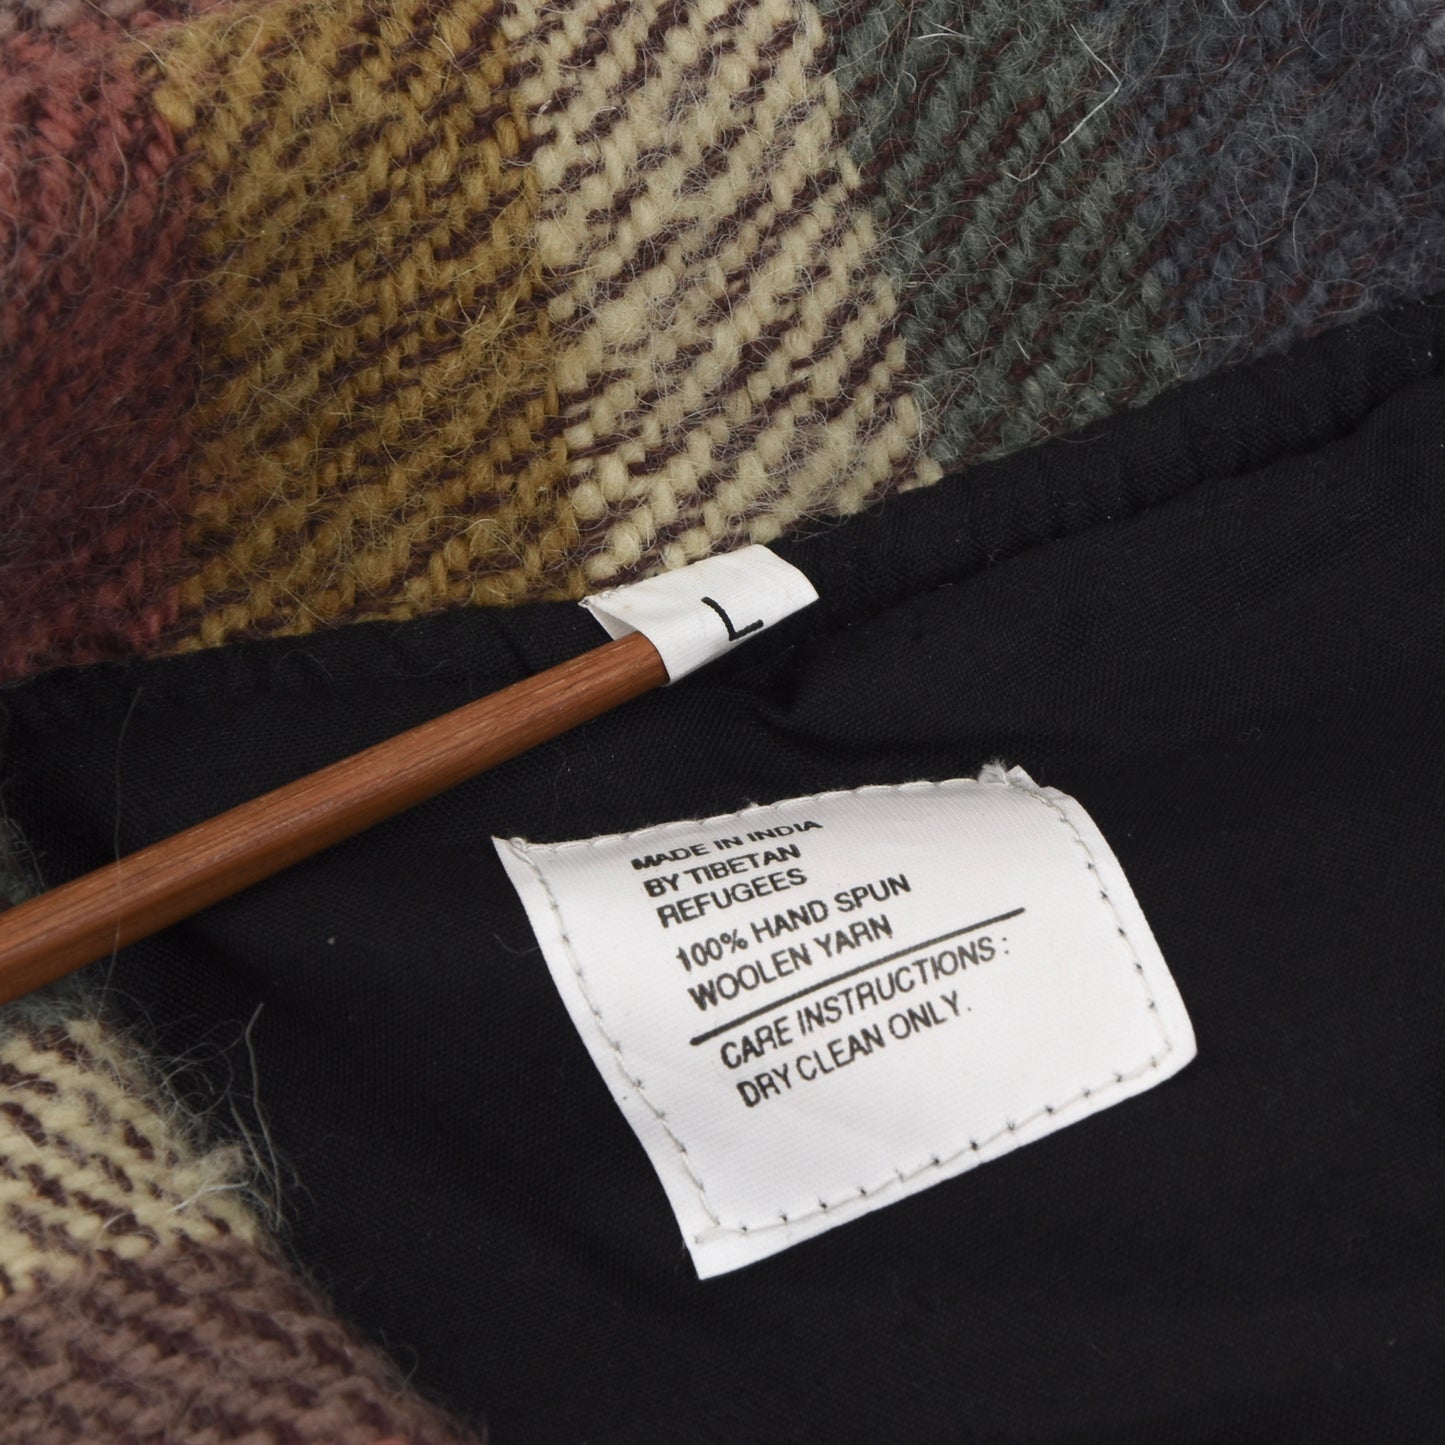 Wool Striped Blanket Jacket Size L